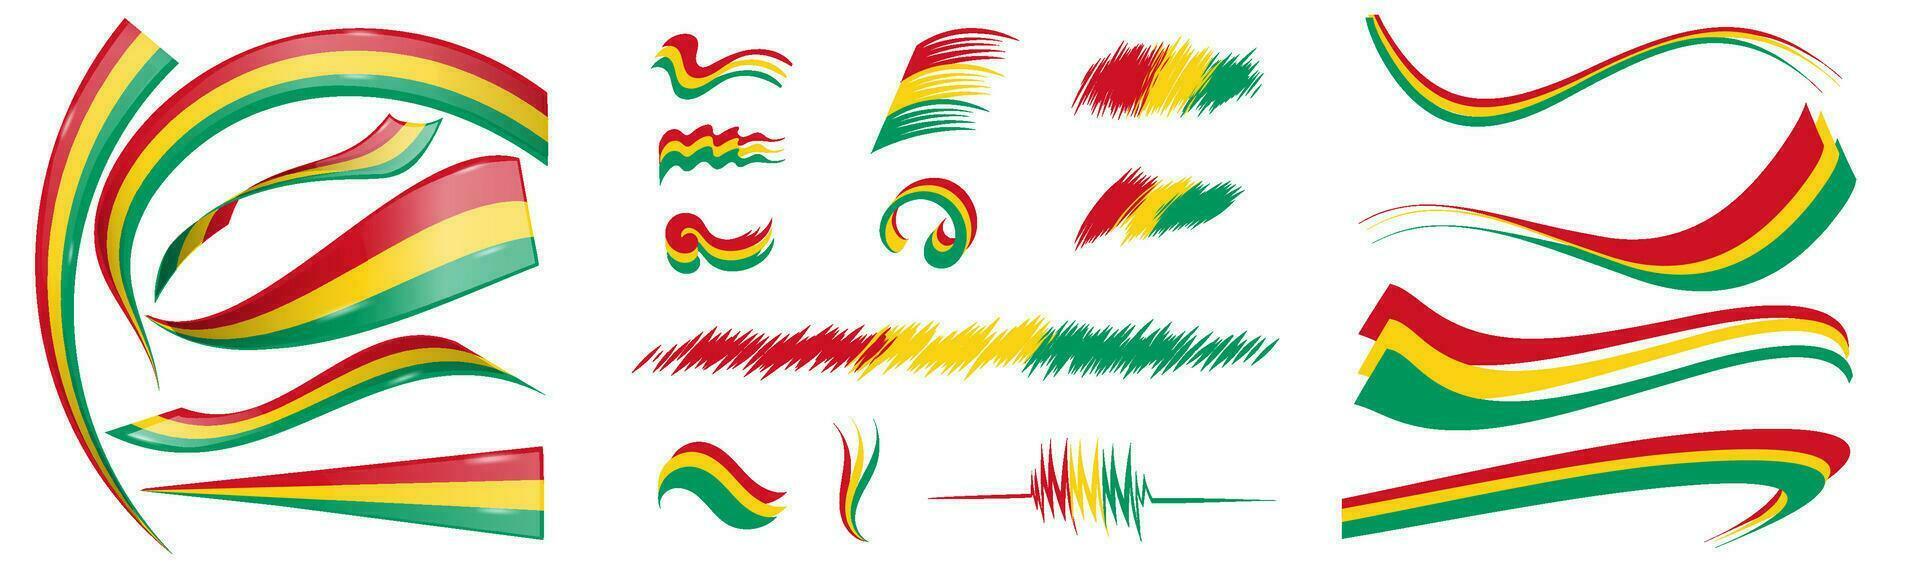 Guinea bandera conjunto elementos, vector ilustración en un blanco antecedentes